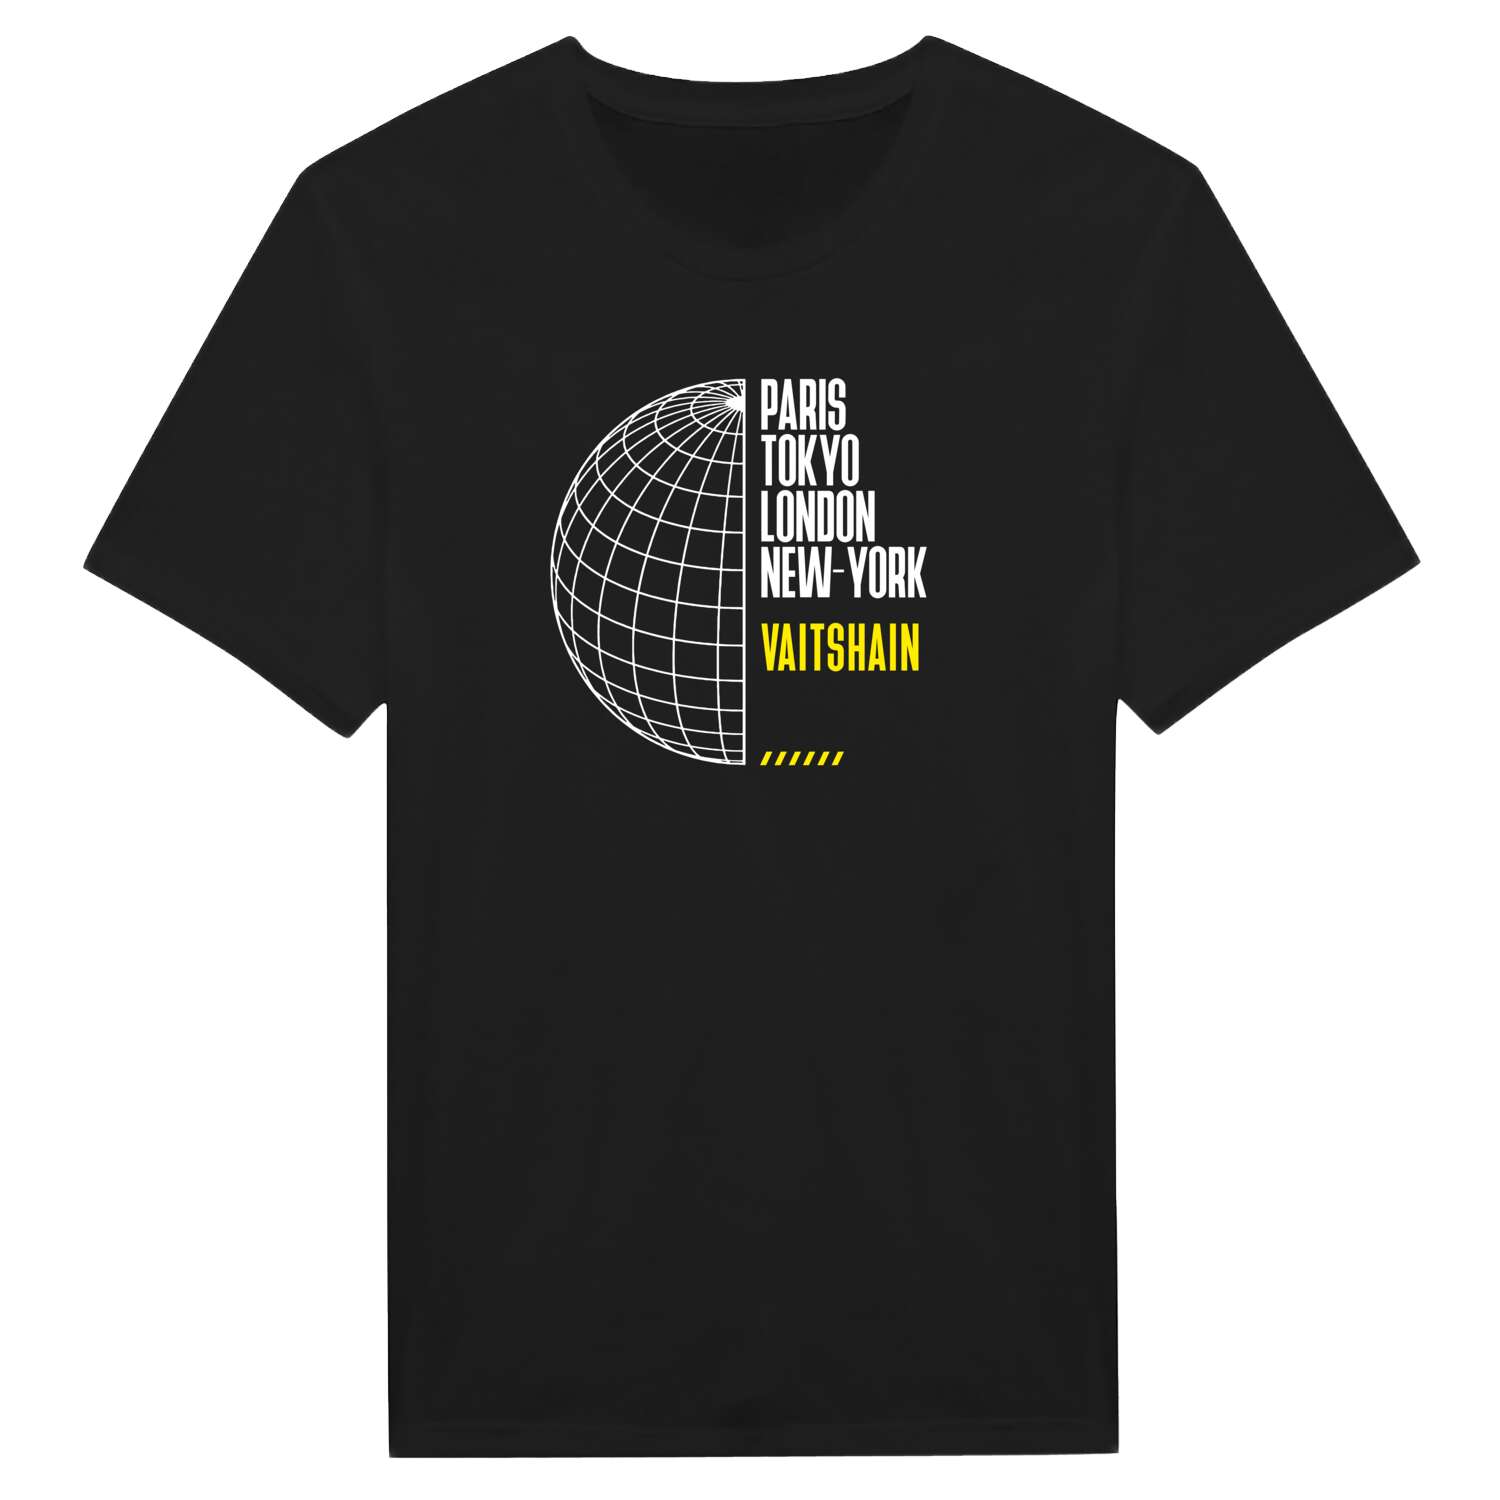 Vaitshain T-Shirt »Paris Tokyo London«